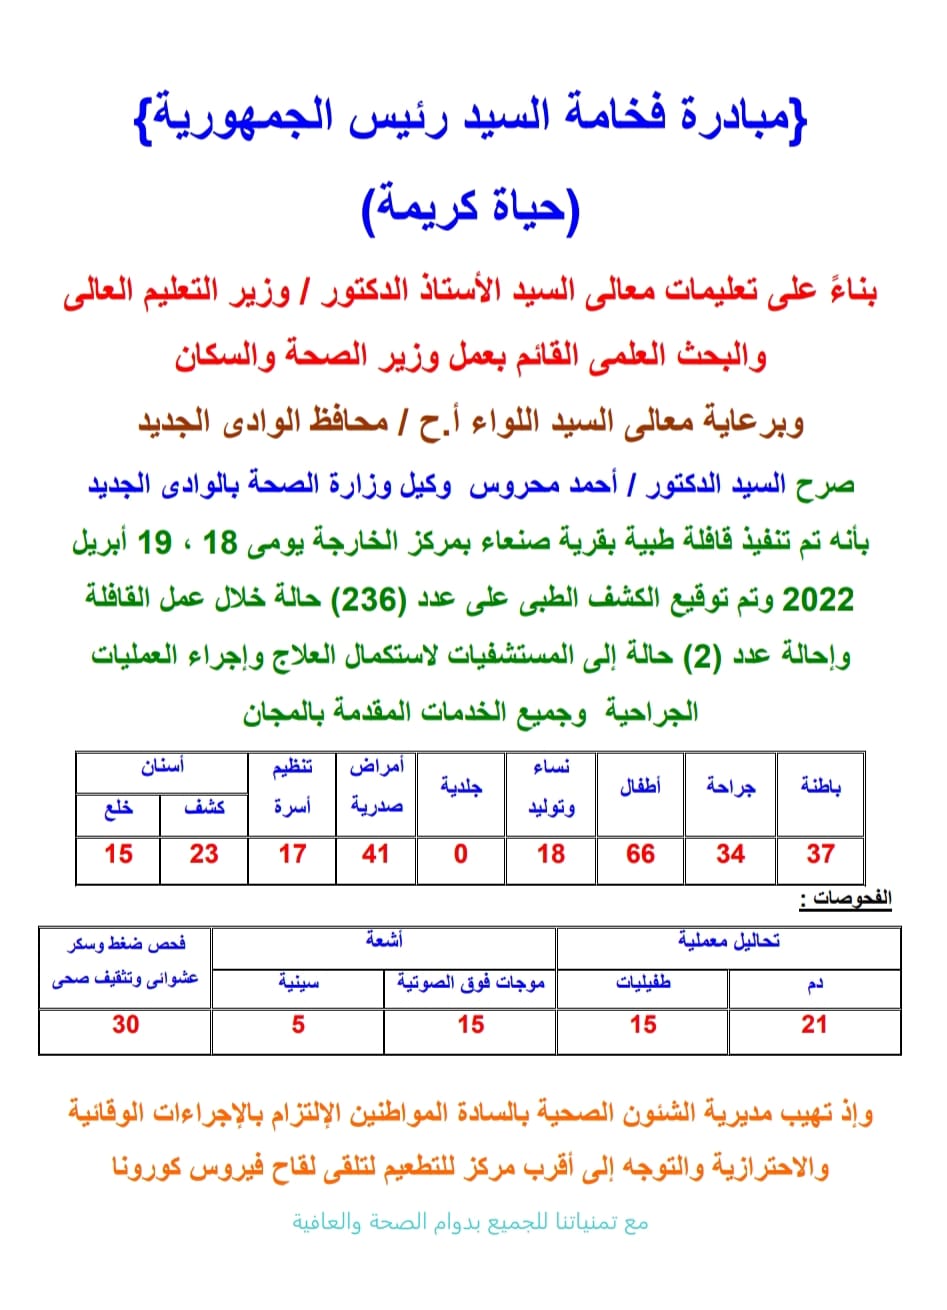 علاج236 حالة مرضية بقرية صنعاء ضمن قوافل حياه كريمة بالوادي الجديد (6)